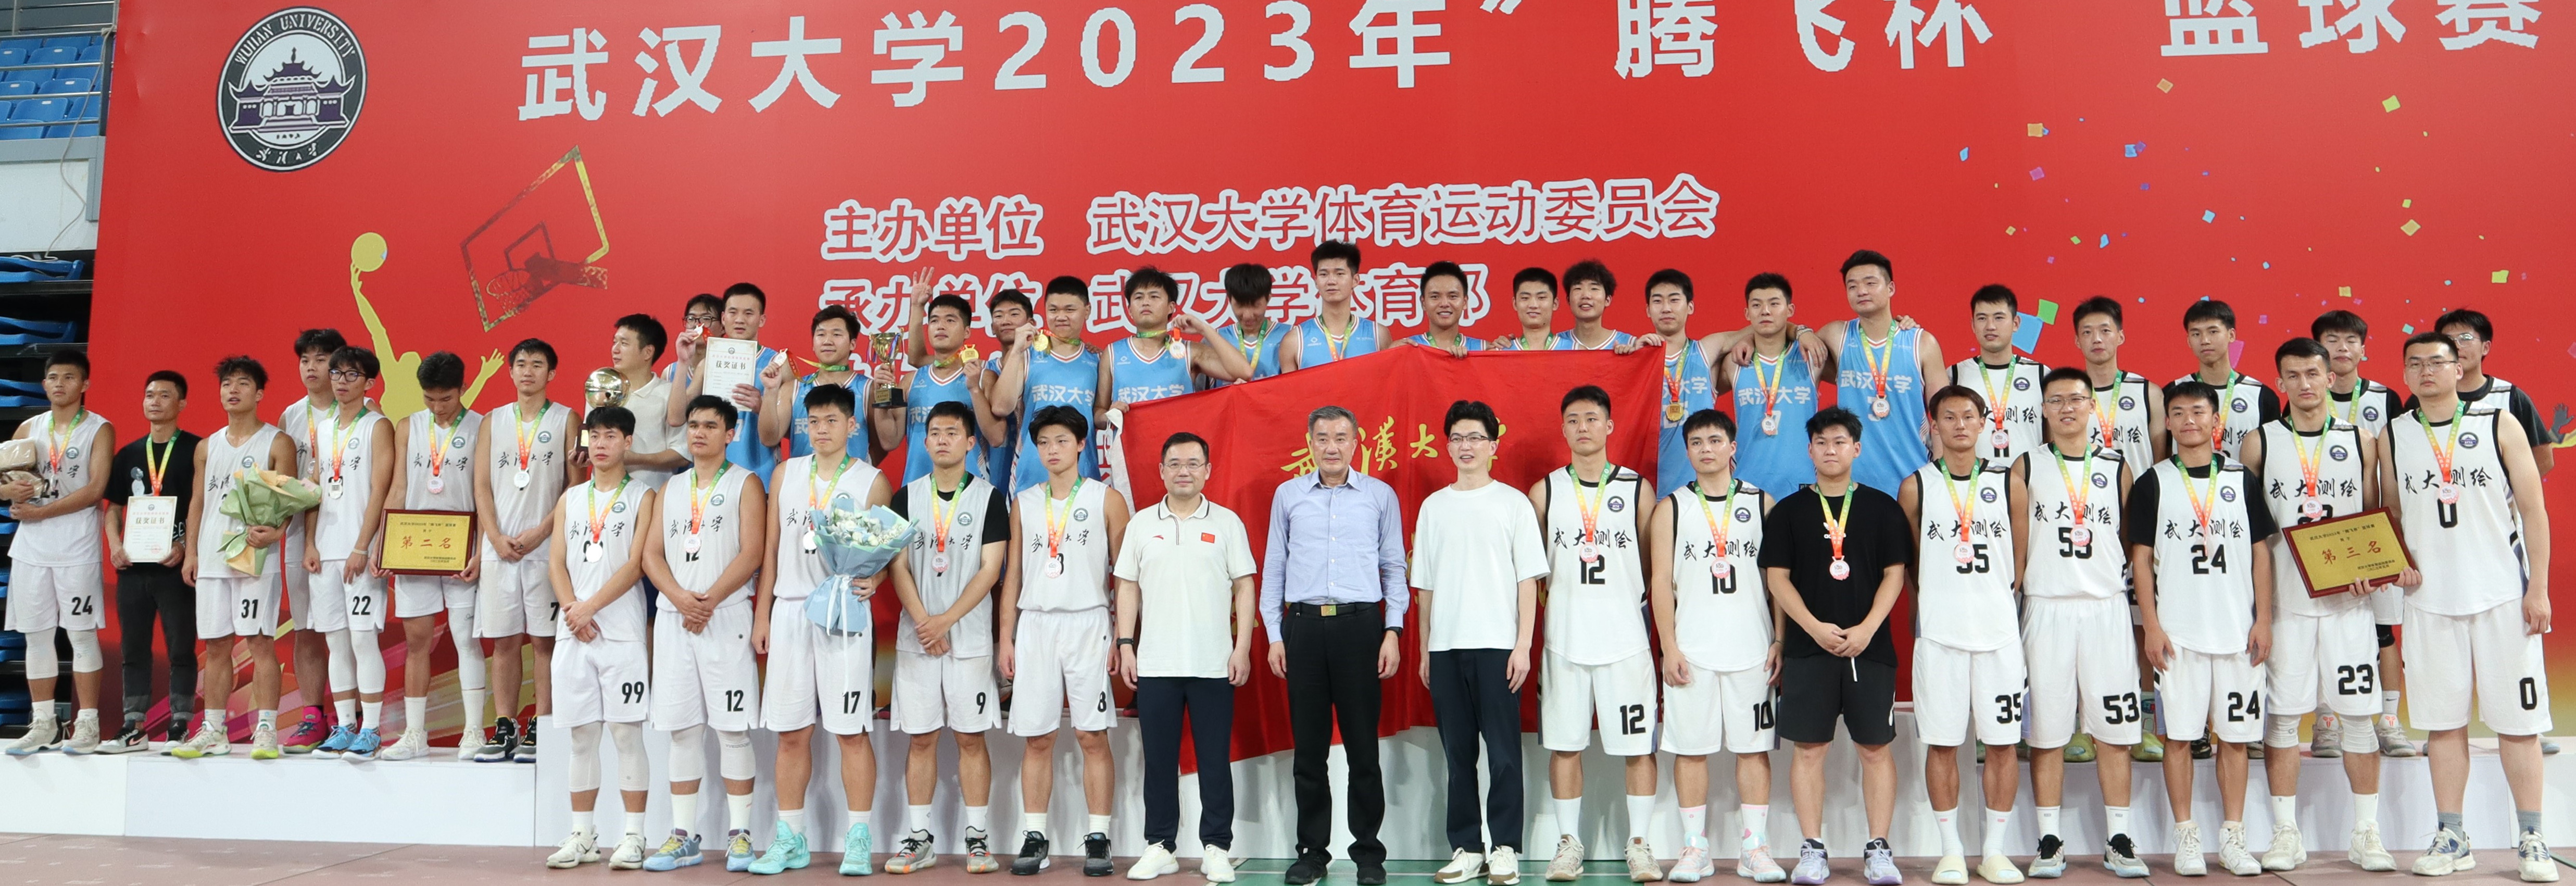 武汉大学2023年“腾飞杯”篮球联赛圆满落幕